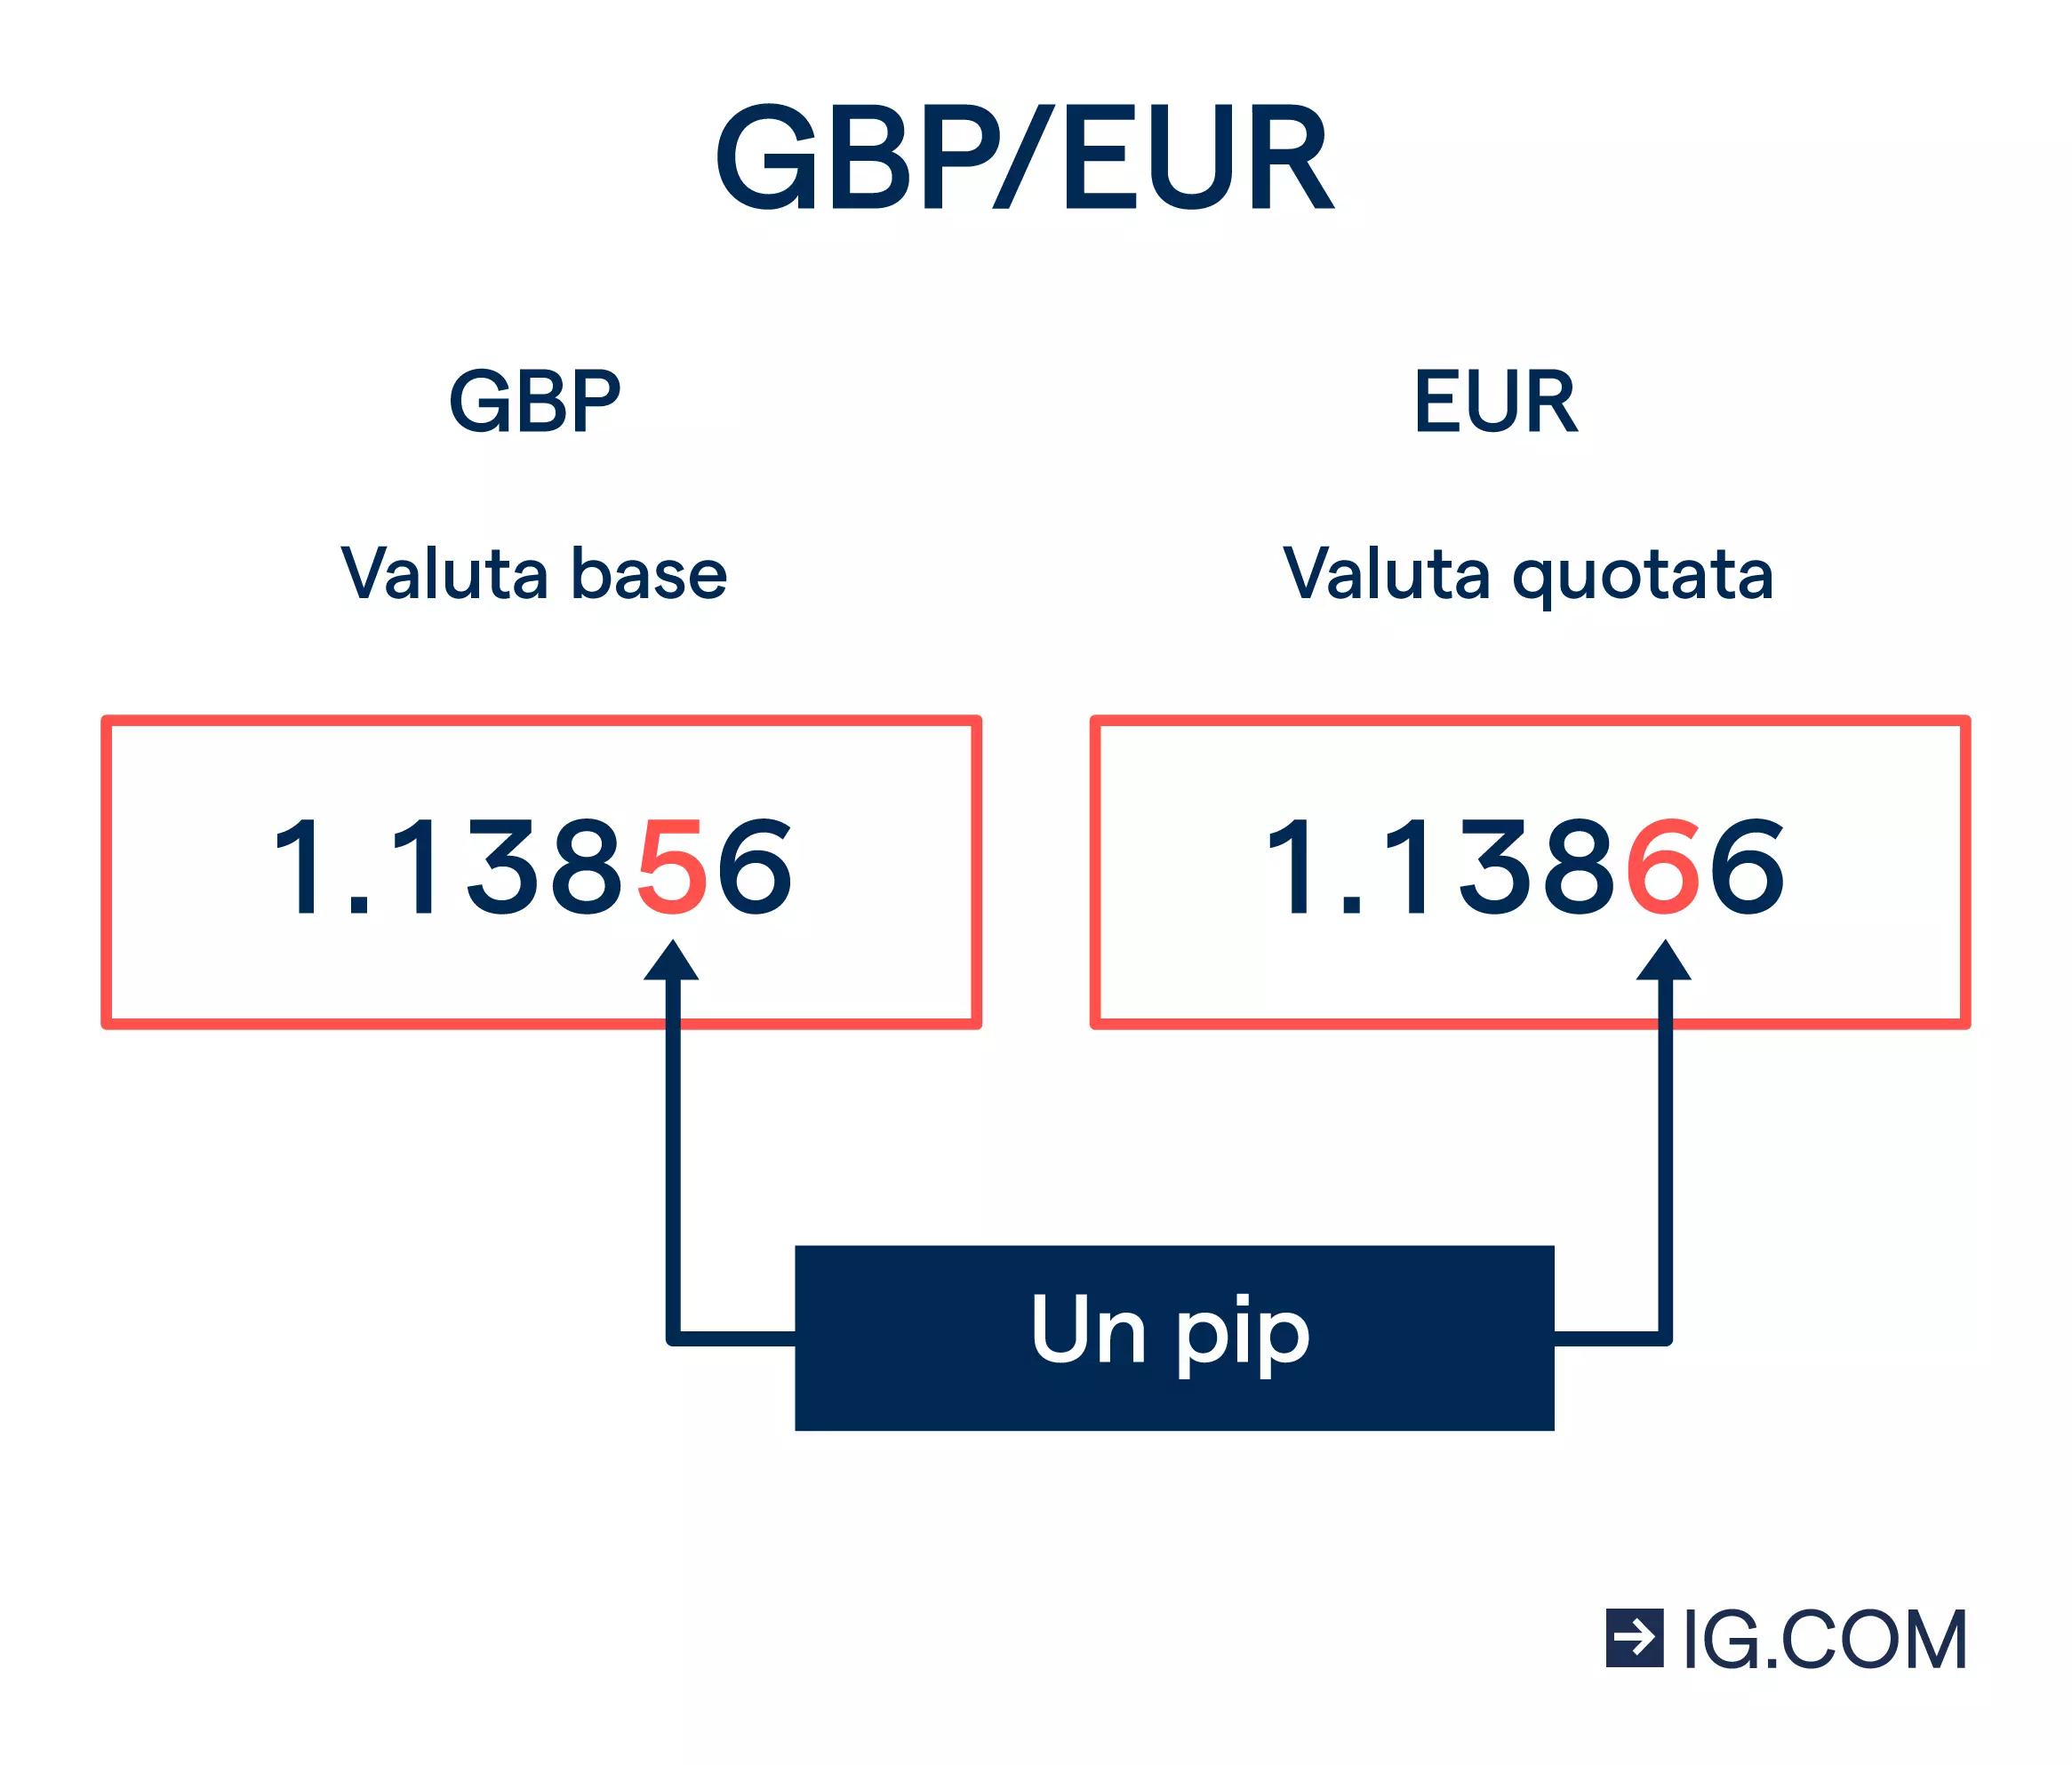 Immagine della coppia valutaria GBP/EUR con i loro valori quotati. La quarta cifra dopo il decimale all'interno di ogni valore è evidenziata in rosso e indicata come "un pip".